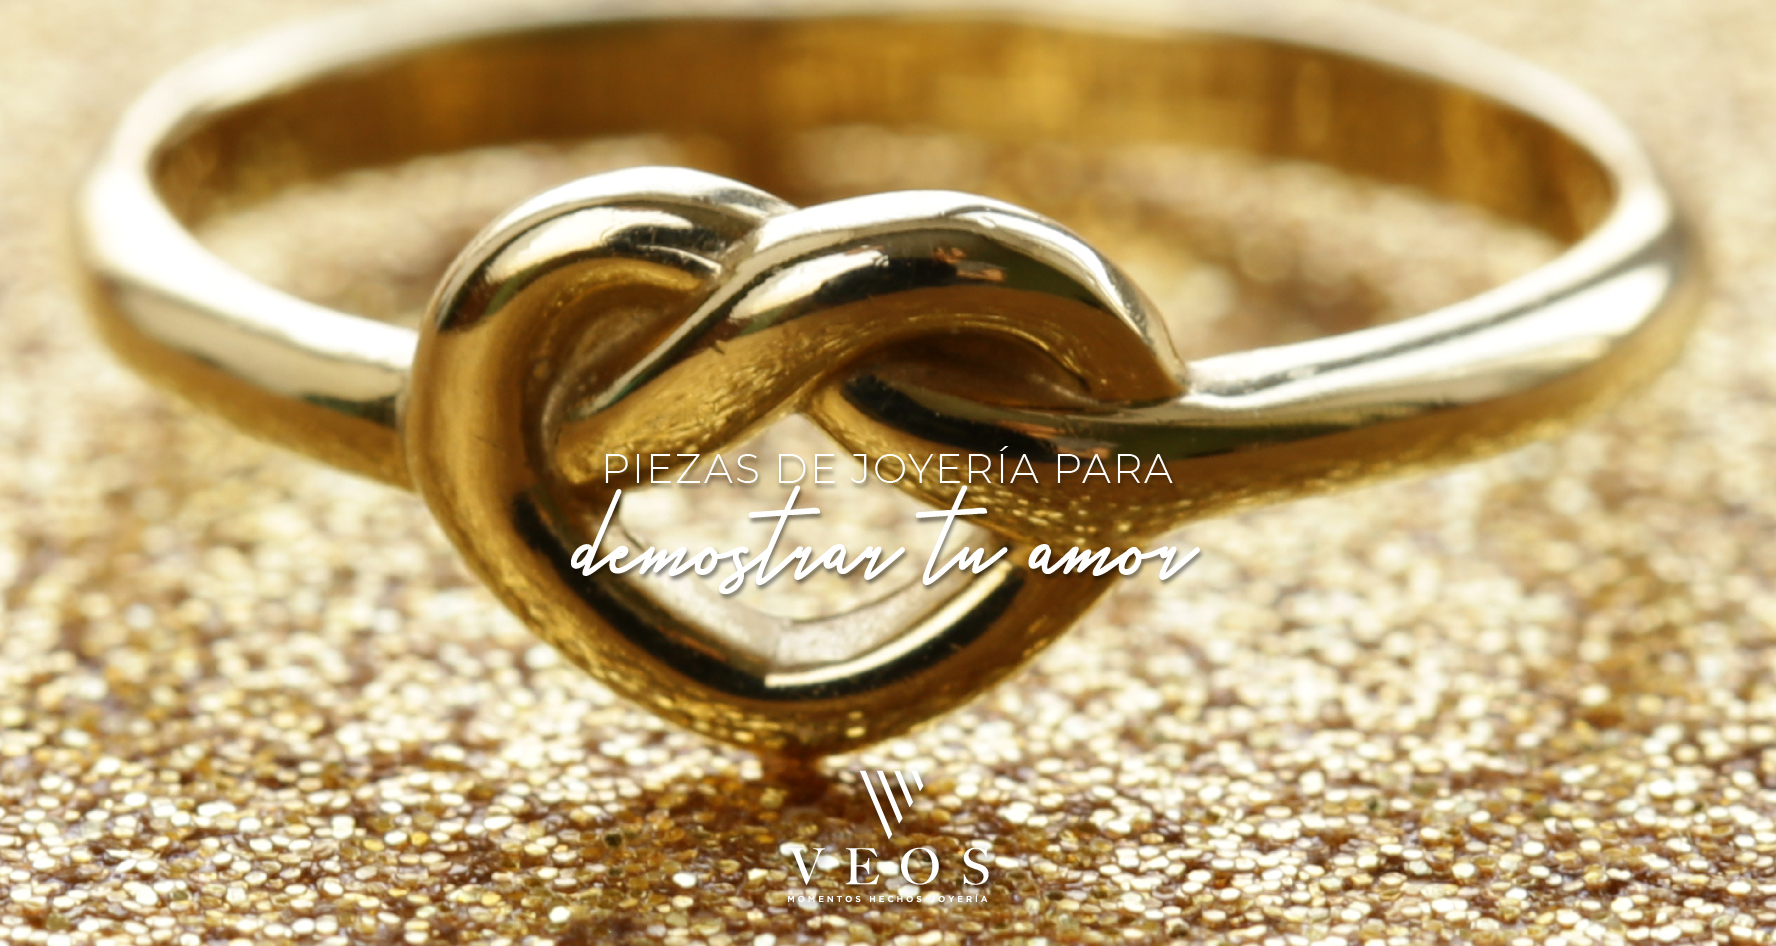 945 bronce número Piezas de joyería para demostrar tu amor - Joyas Veos